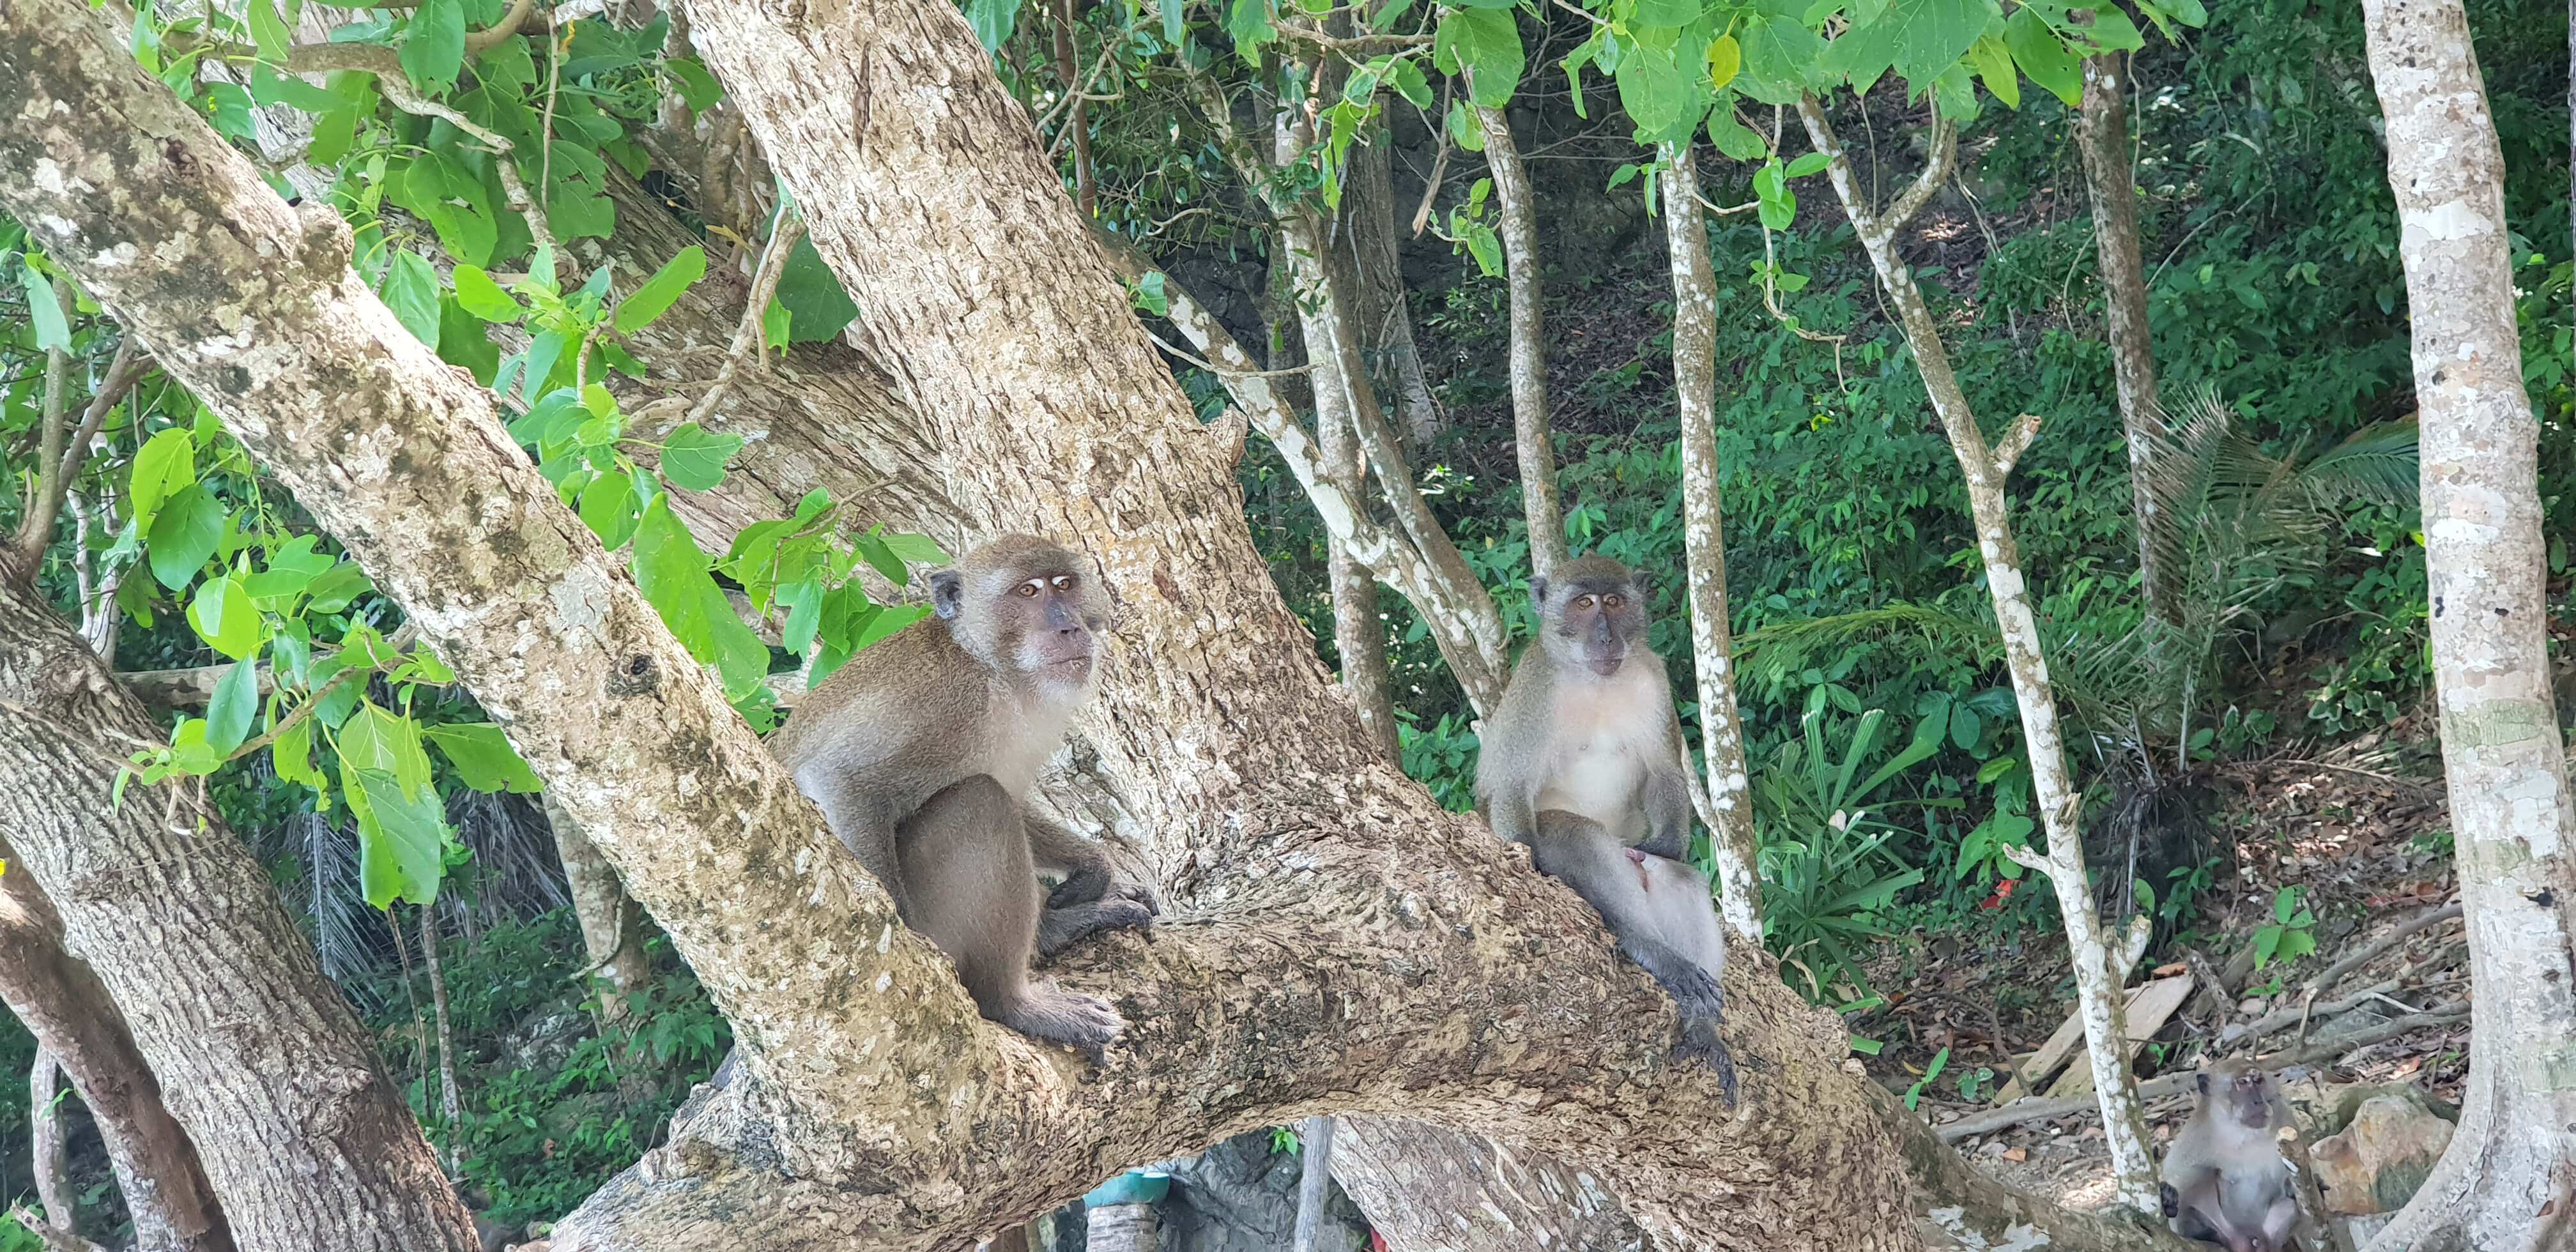 Meet the monkeys at the Monkey Beach